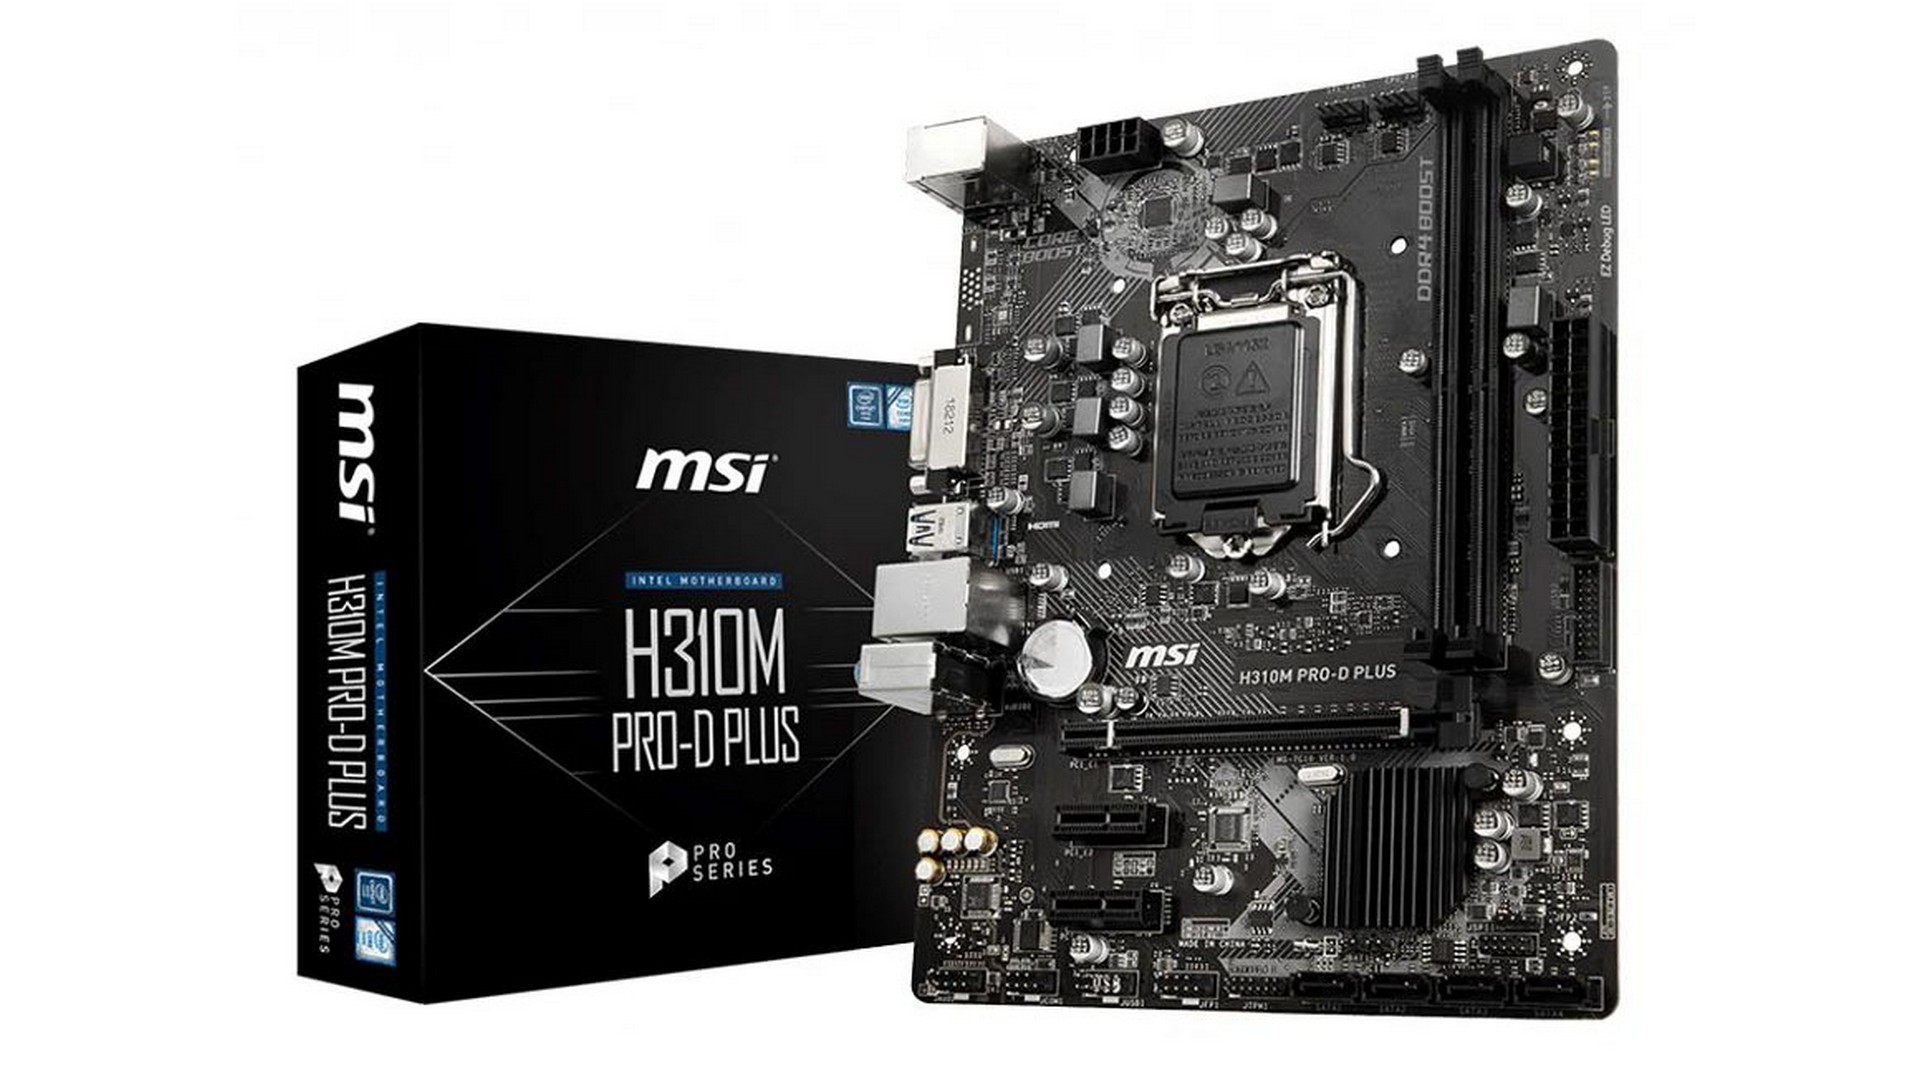 Mainboard MSI H310M PRO-D PLUS (Intel Socket 1151, m-ATX, 2 khe RAM DDR4)